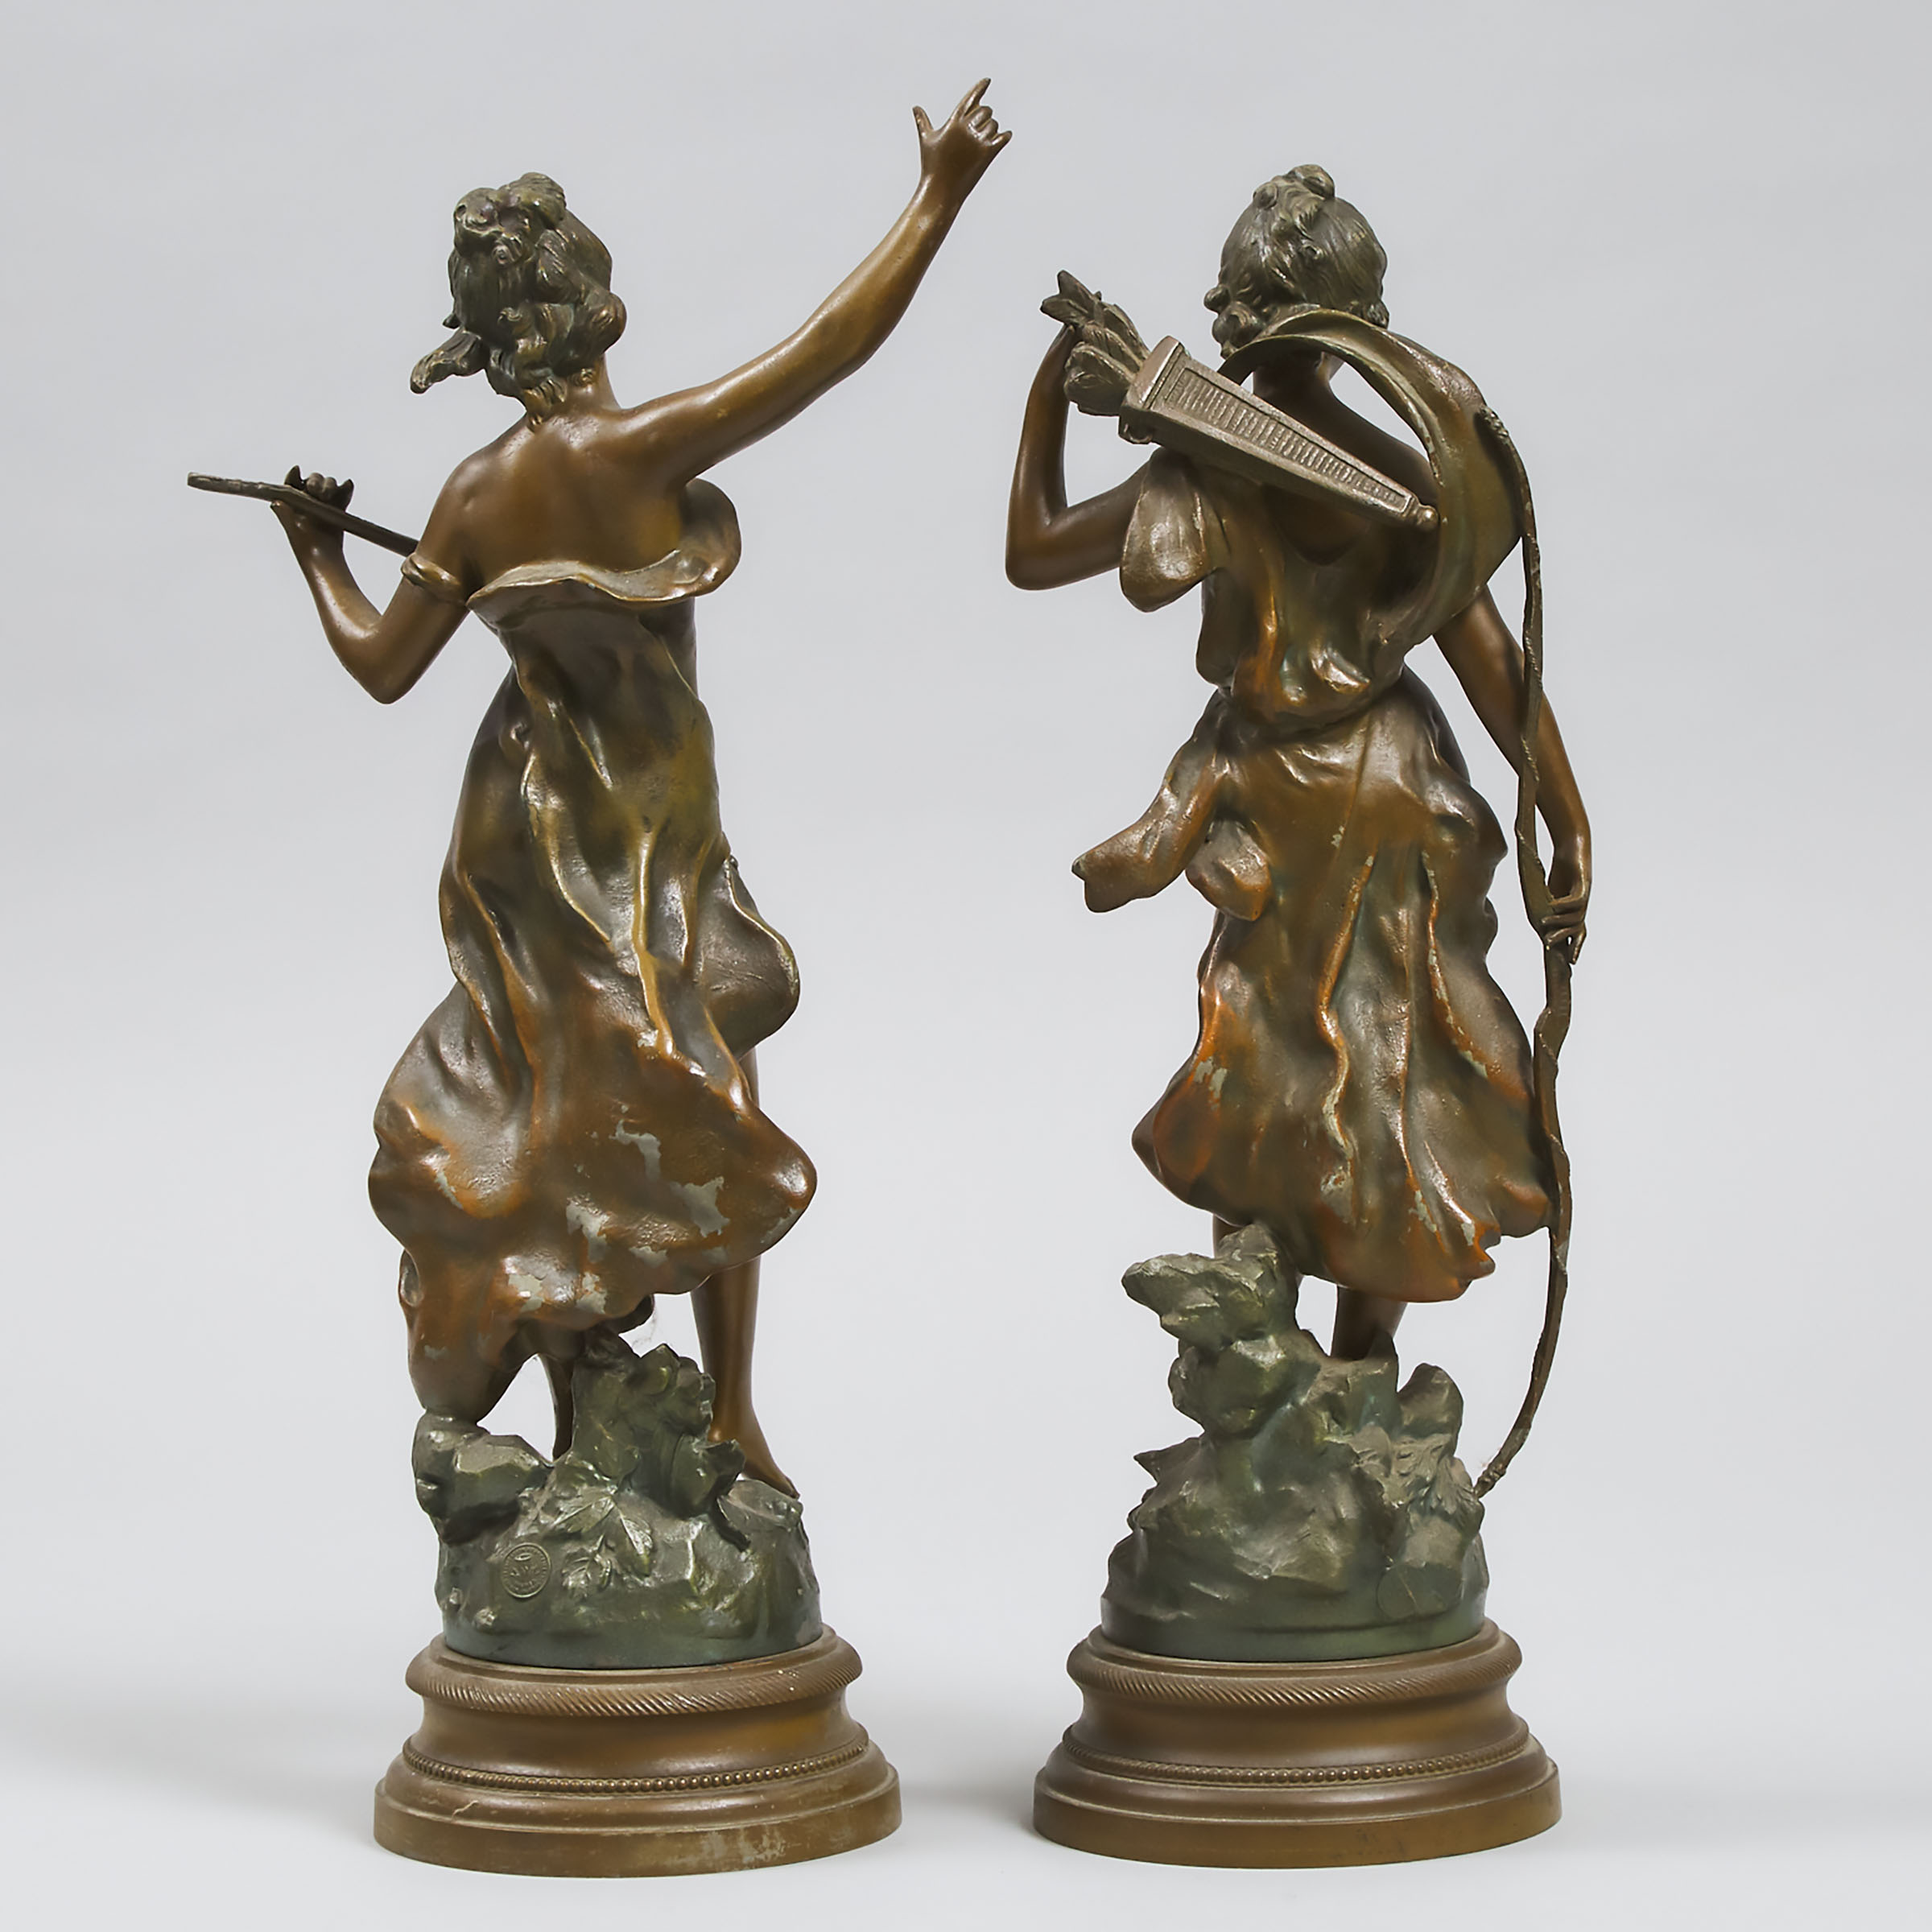 Pair of Art Nouveau Patinated Metal Figures, after Auguste Moureau c.1890